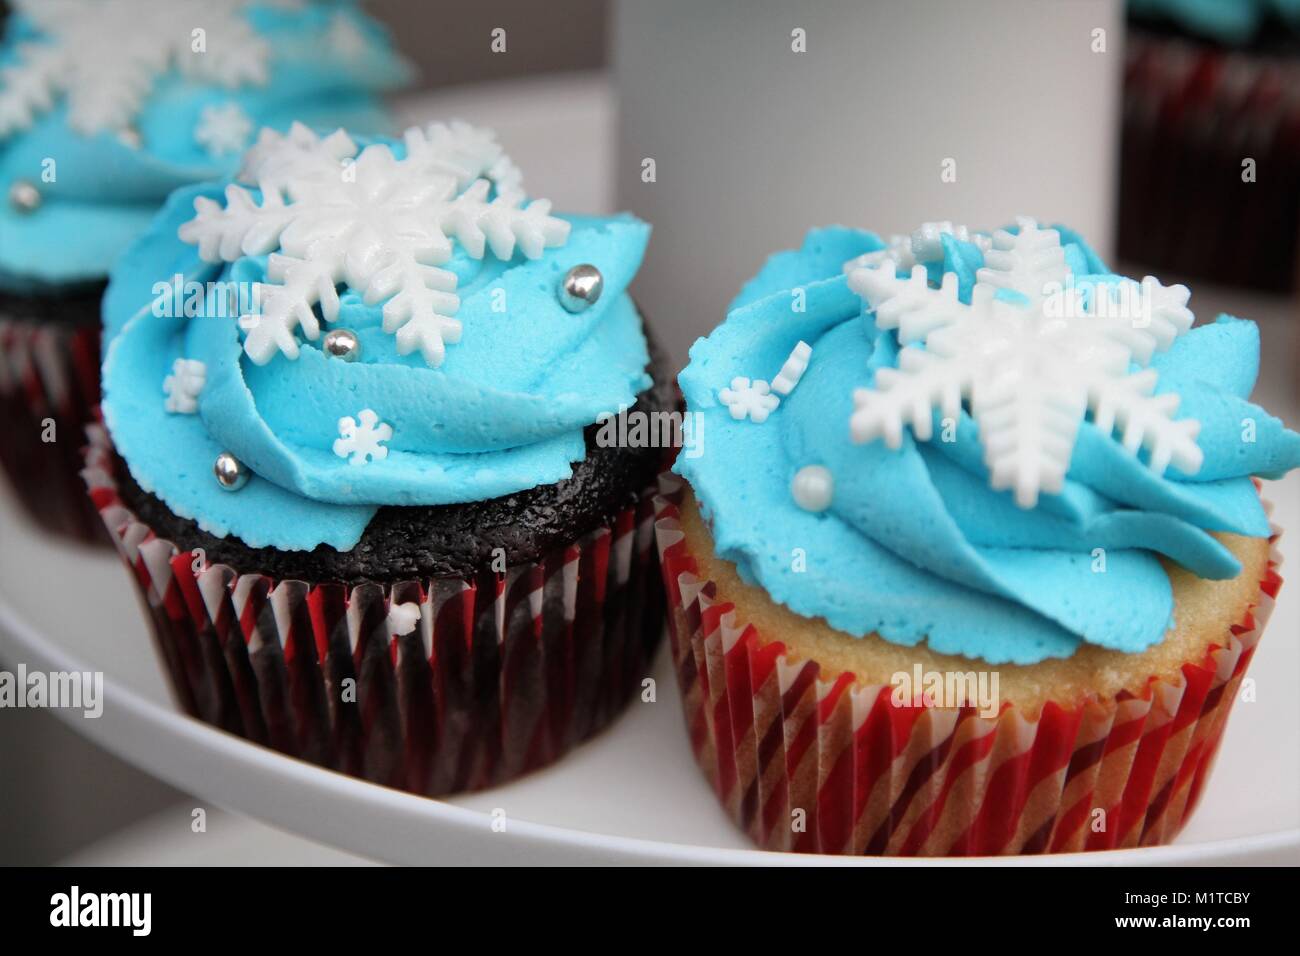 Maison de vacances de décoration cupcakes avec flocons de neige et boules d'argent Banque D'Images